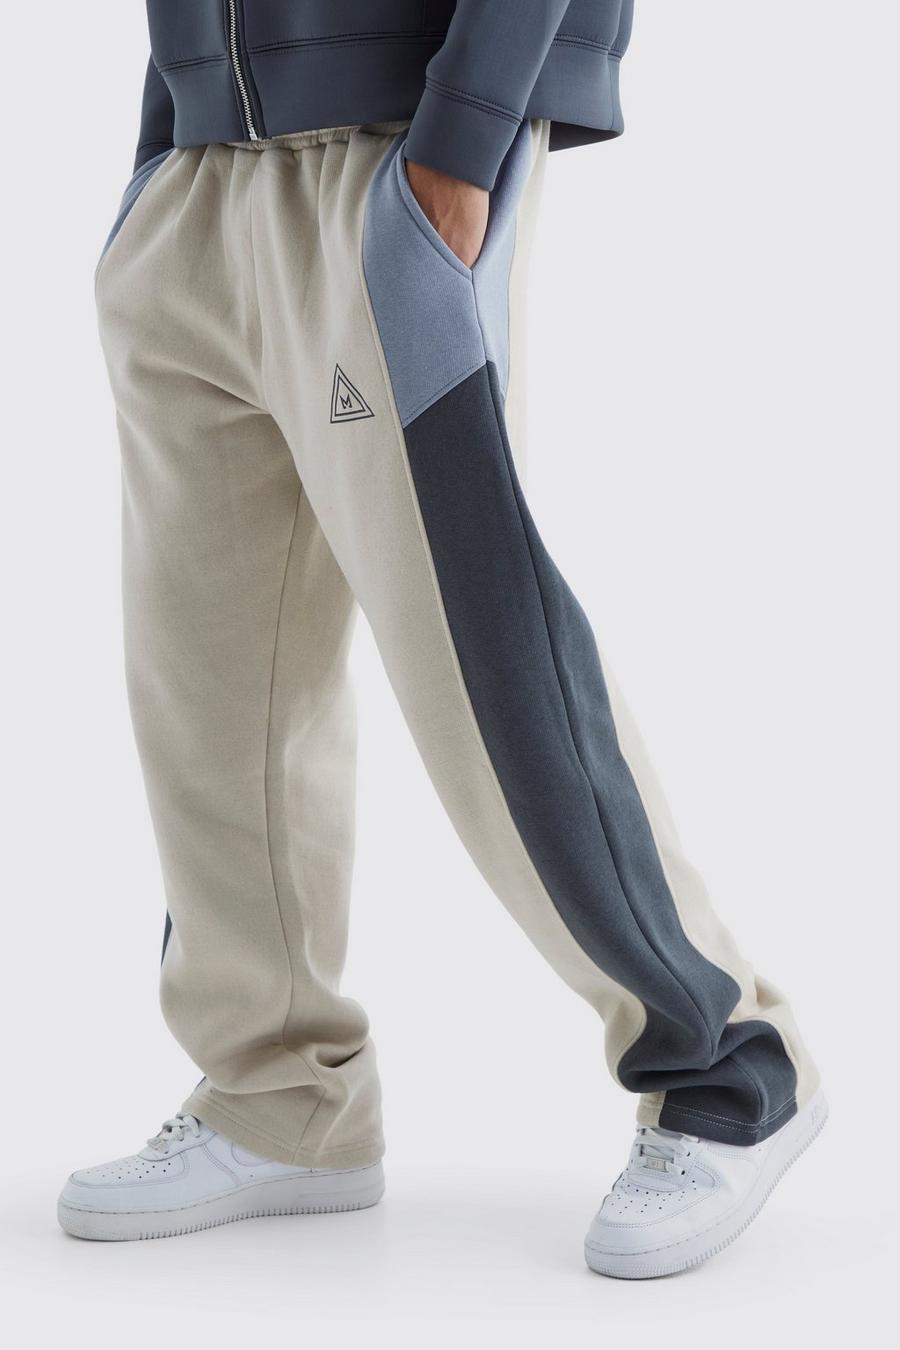 Pantaloni tuta rilassati a blocchi di colore con logo, Charcoal